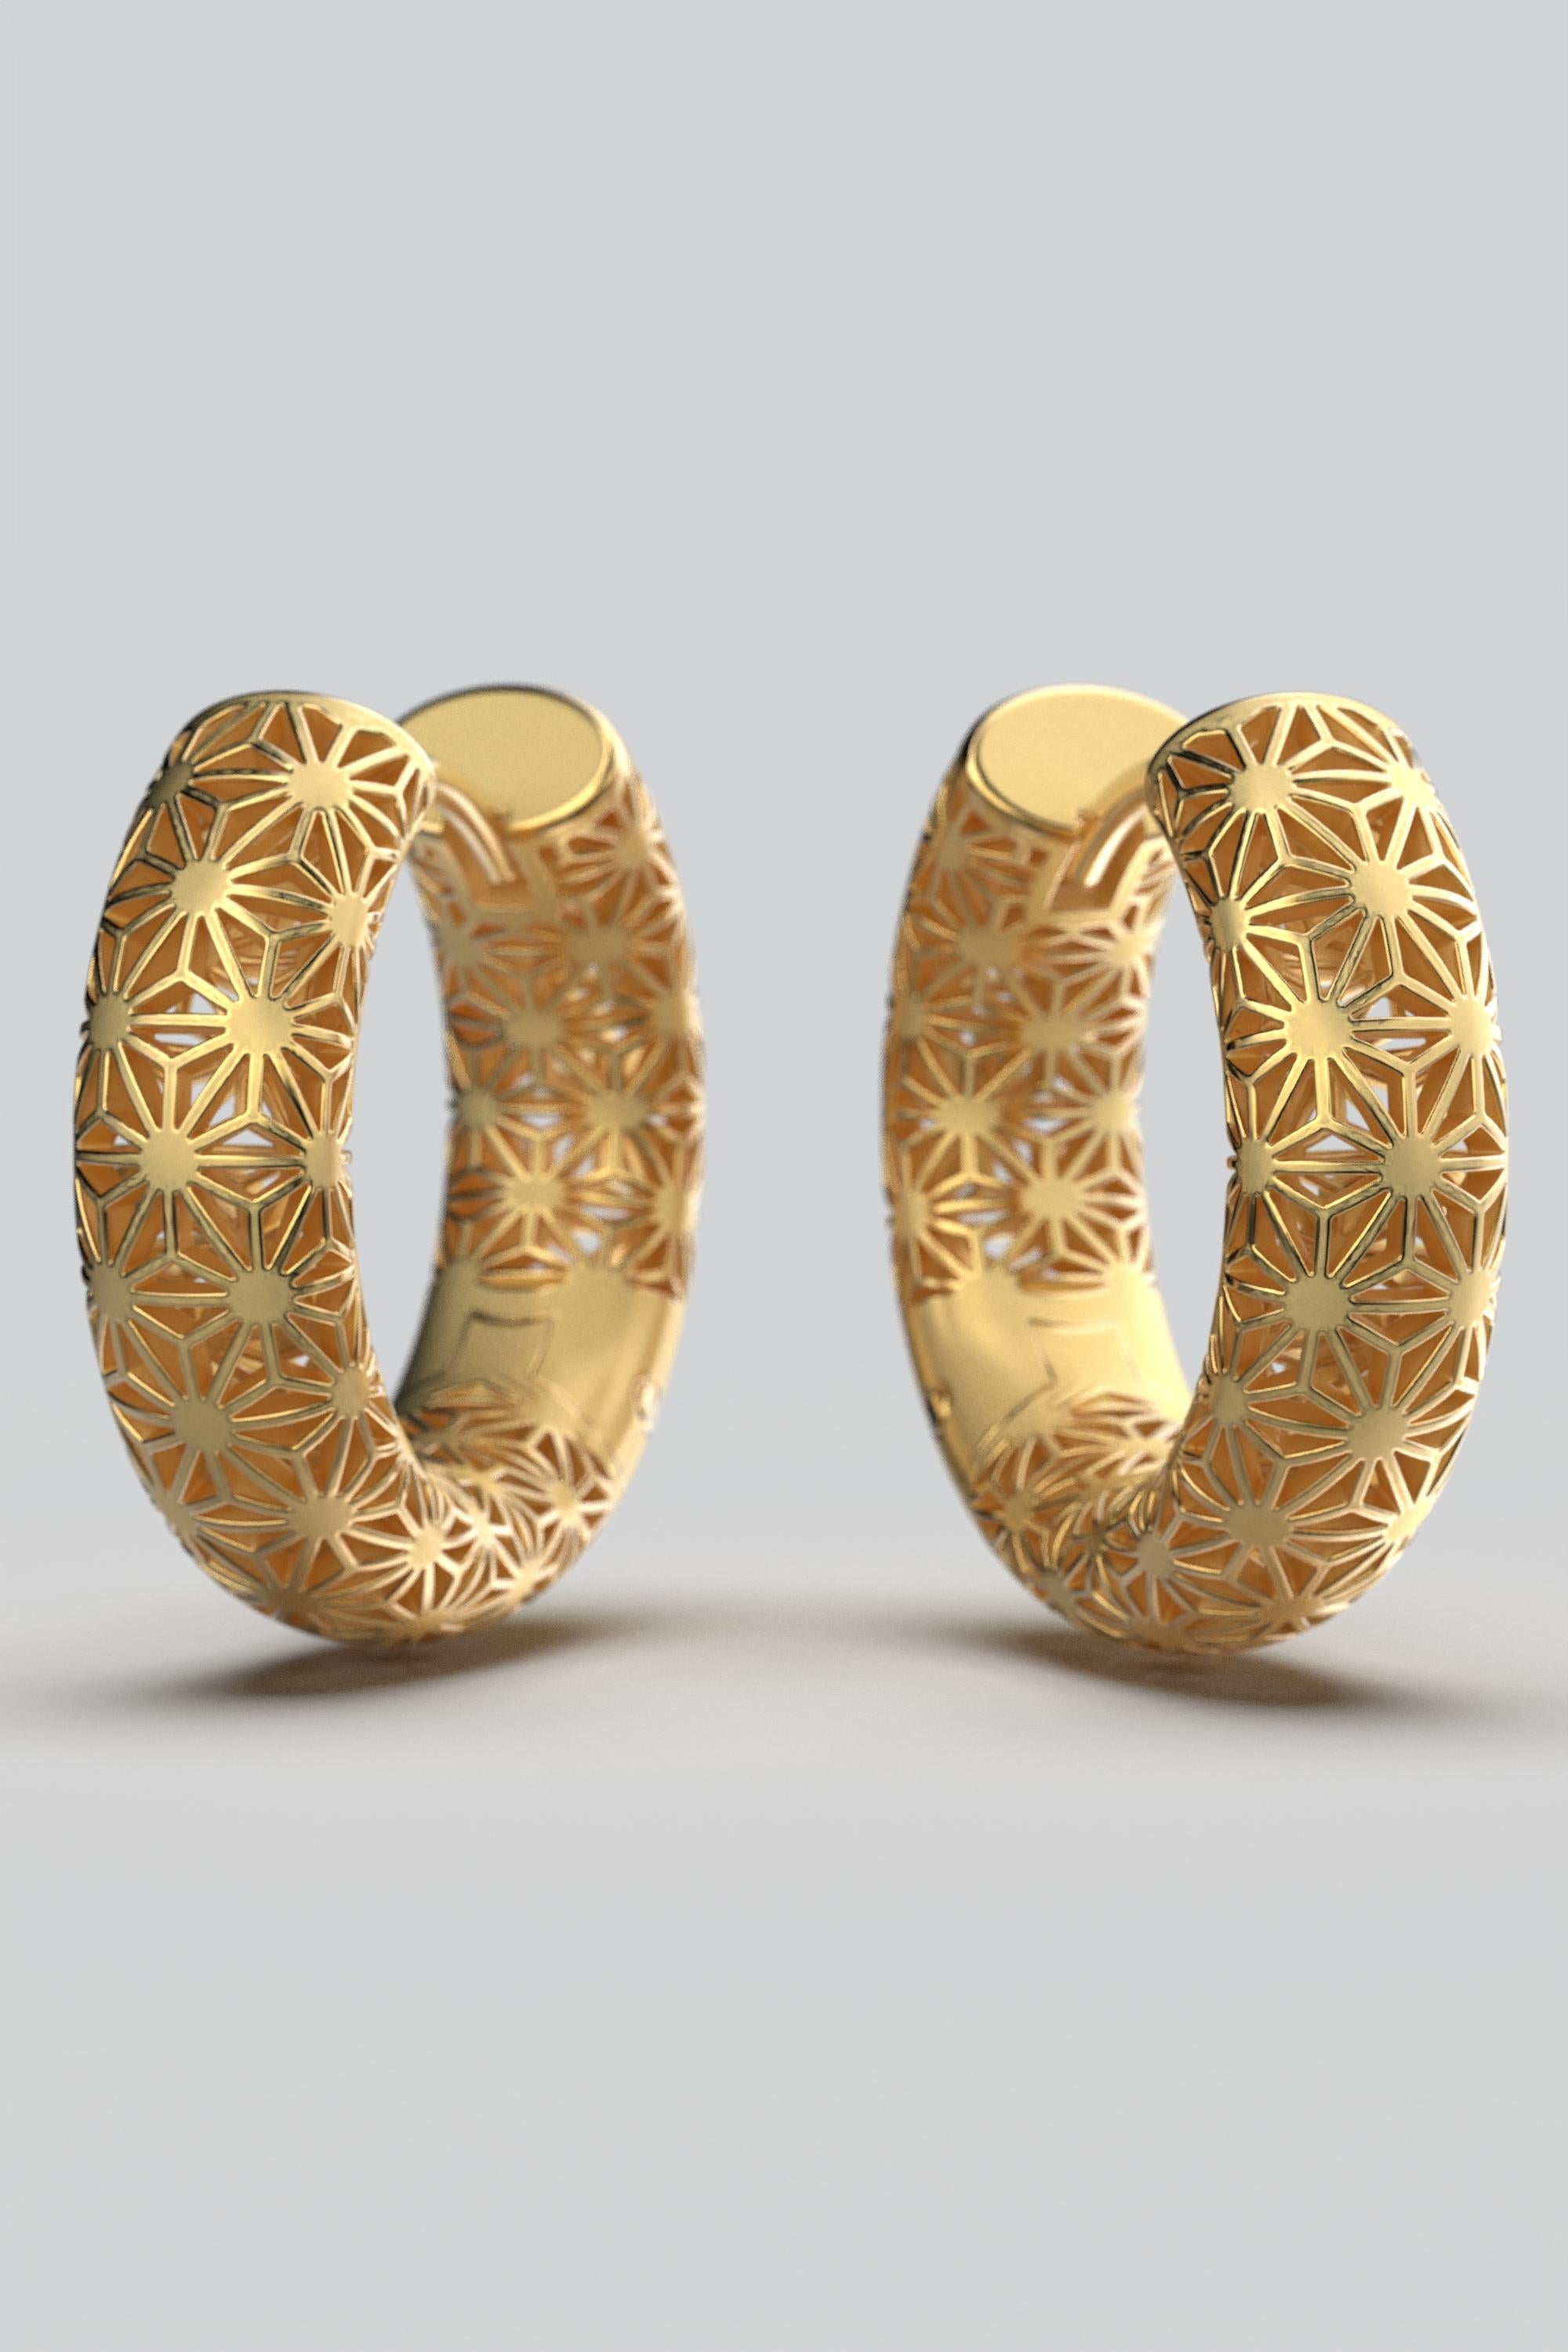  Oltremare Gioielli 18K Italian Gold Hoop Earrings - Sashiko Japanese Pattern  For Sale 3